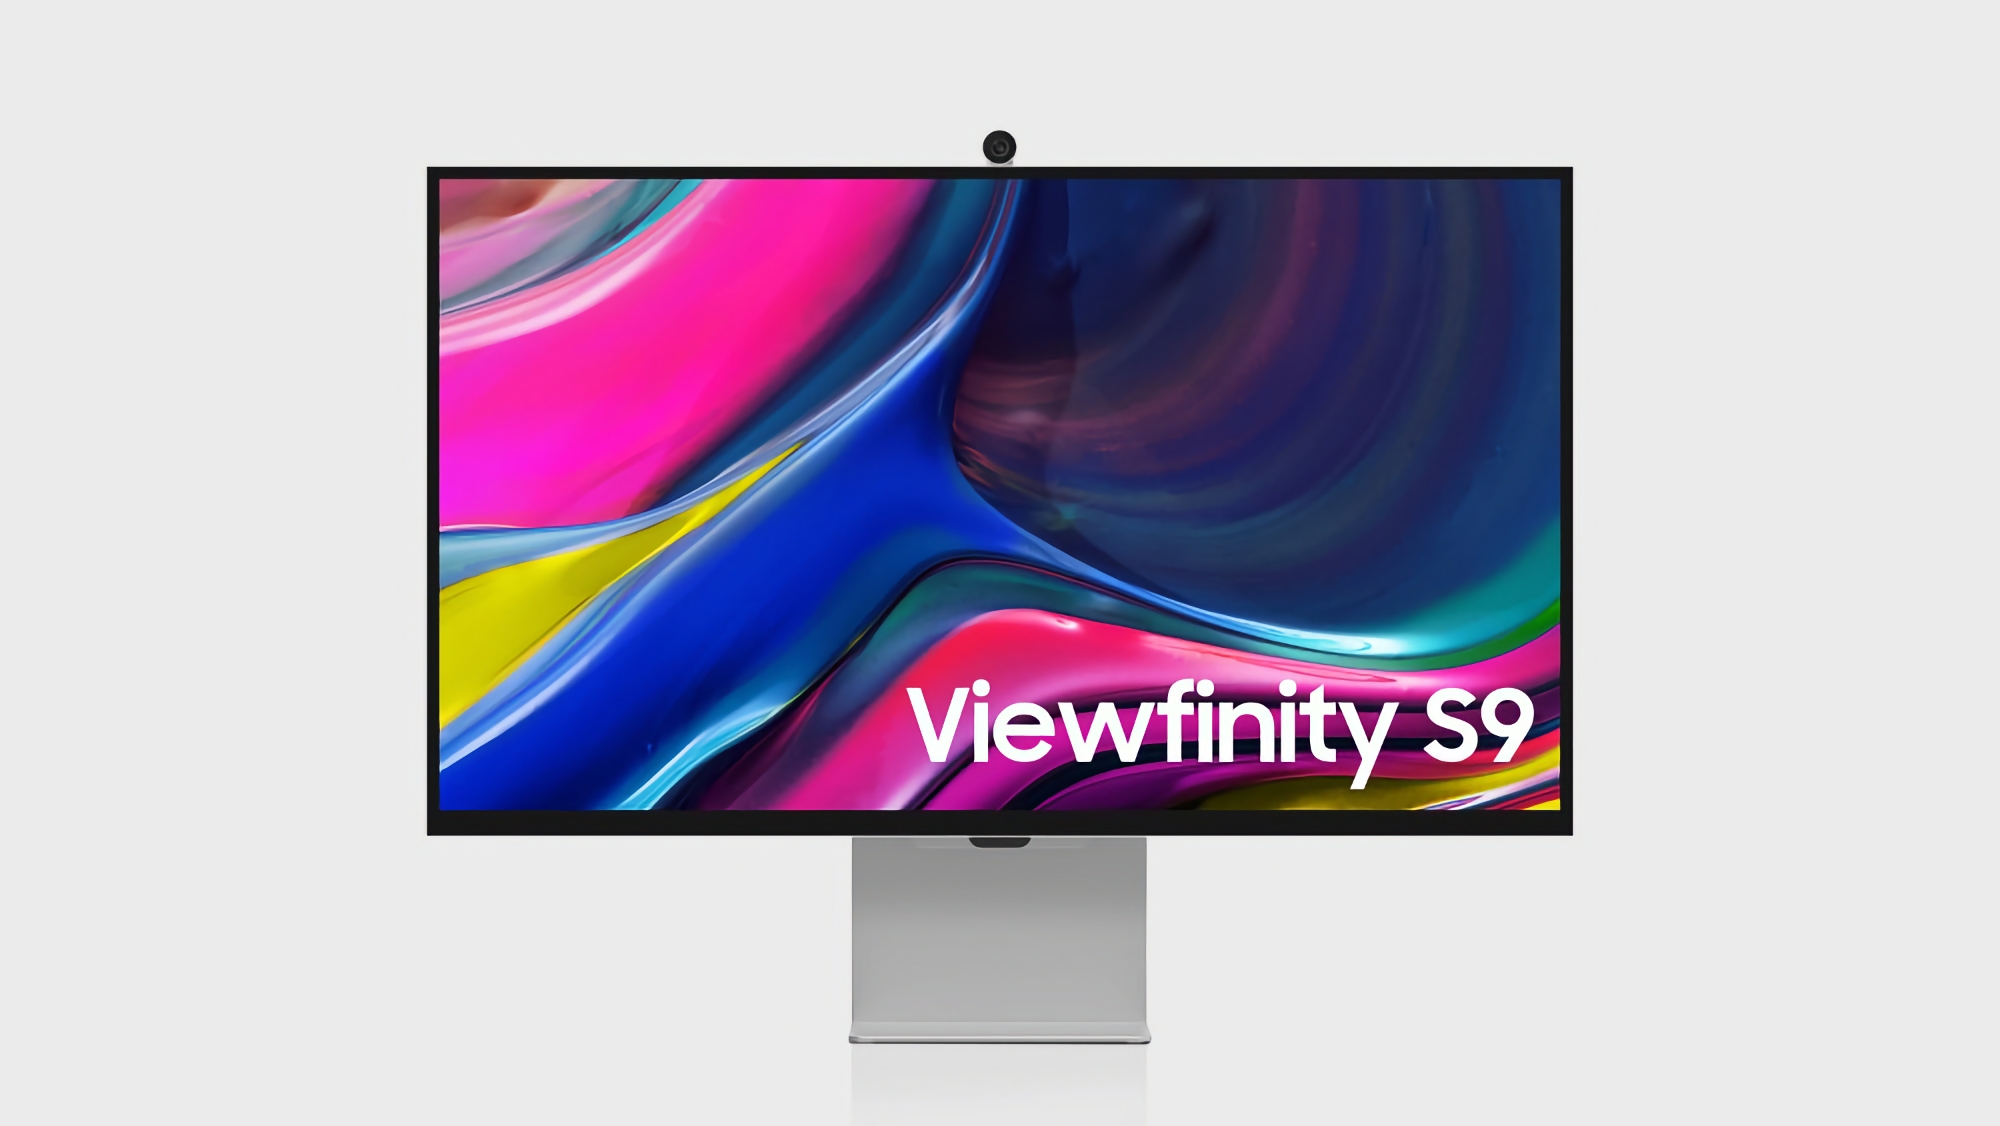 Oferta del día: El monitor Samsung ViewFinity S9 se puede comprar en Amazon con un descuento de más del 30%.